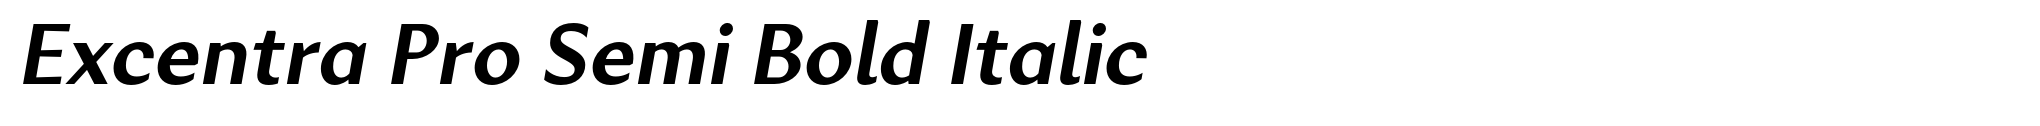 Excentra Pro Semi Bold Italic image